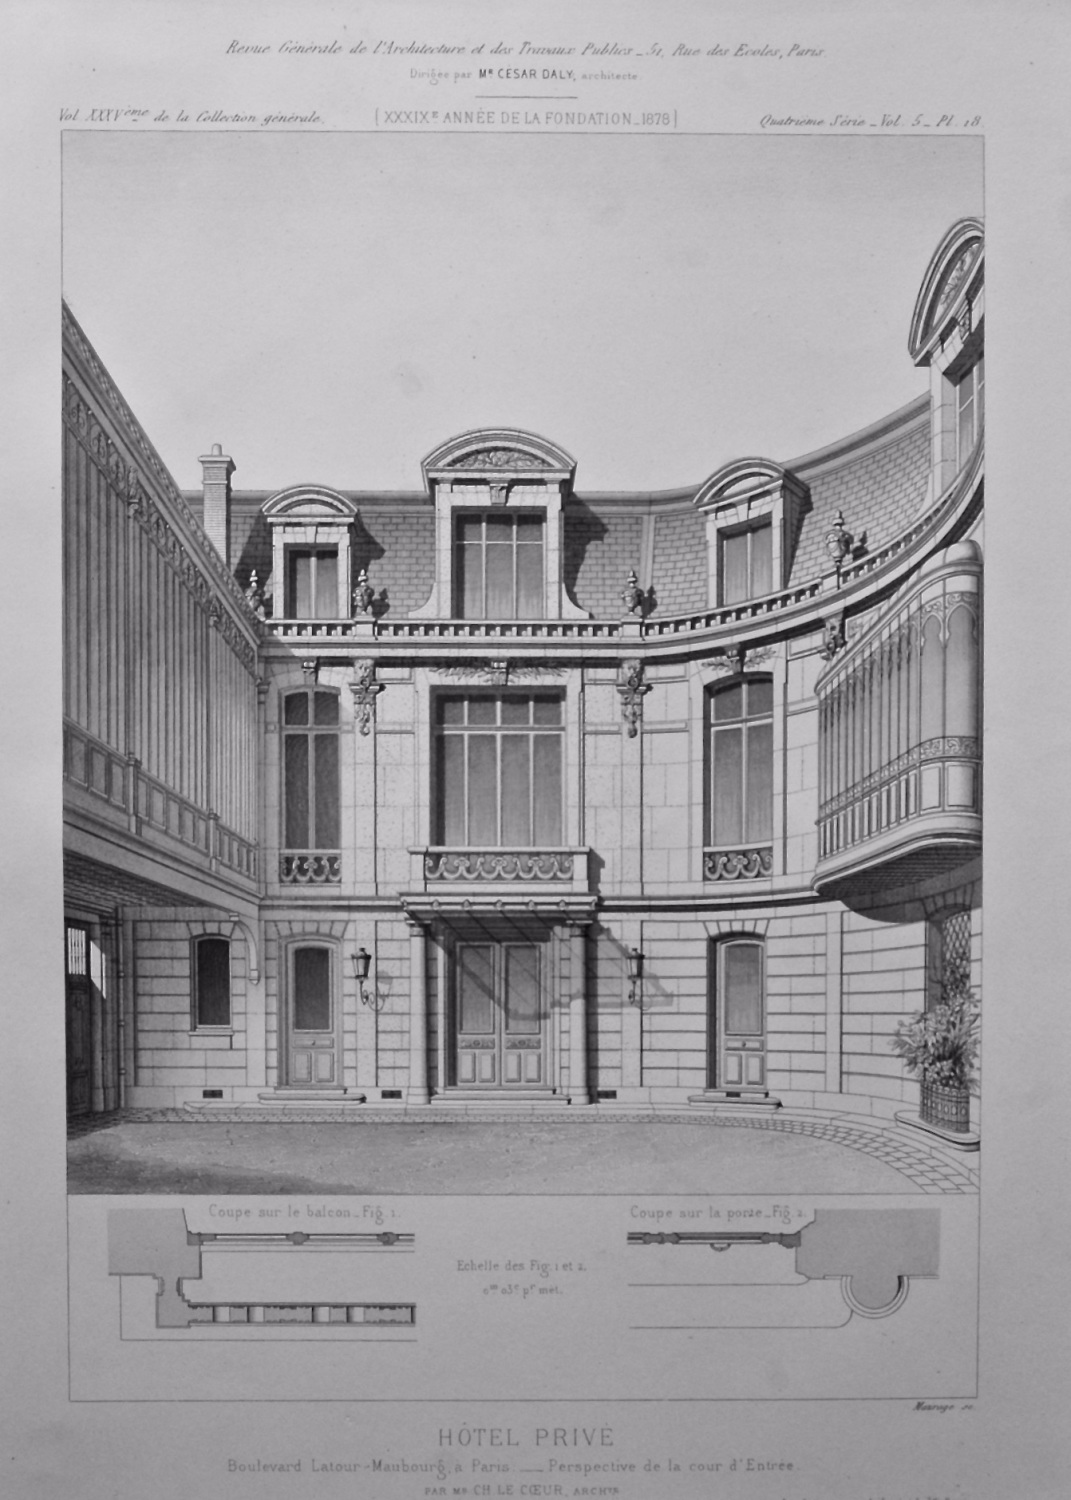 Hotel Prive, Boulevard Latout - Maubourg, a Paris. - Perspective de la cour